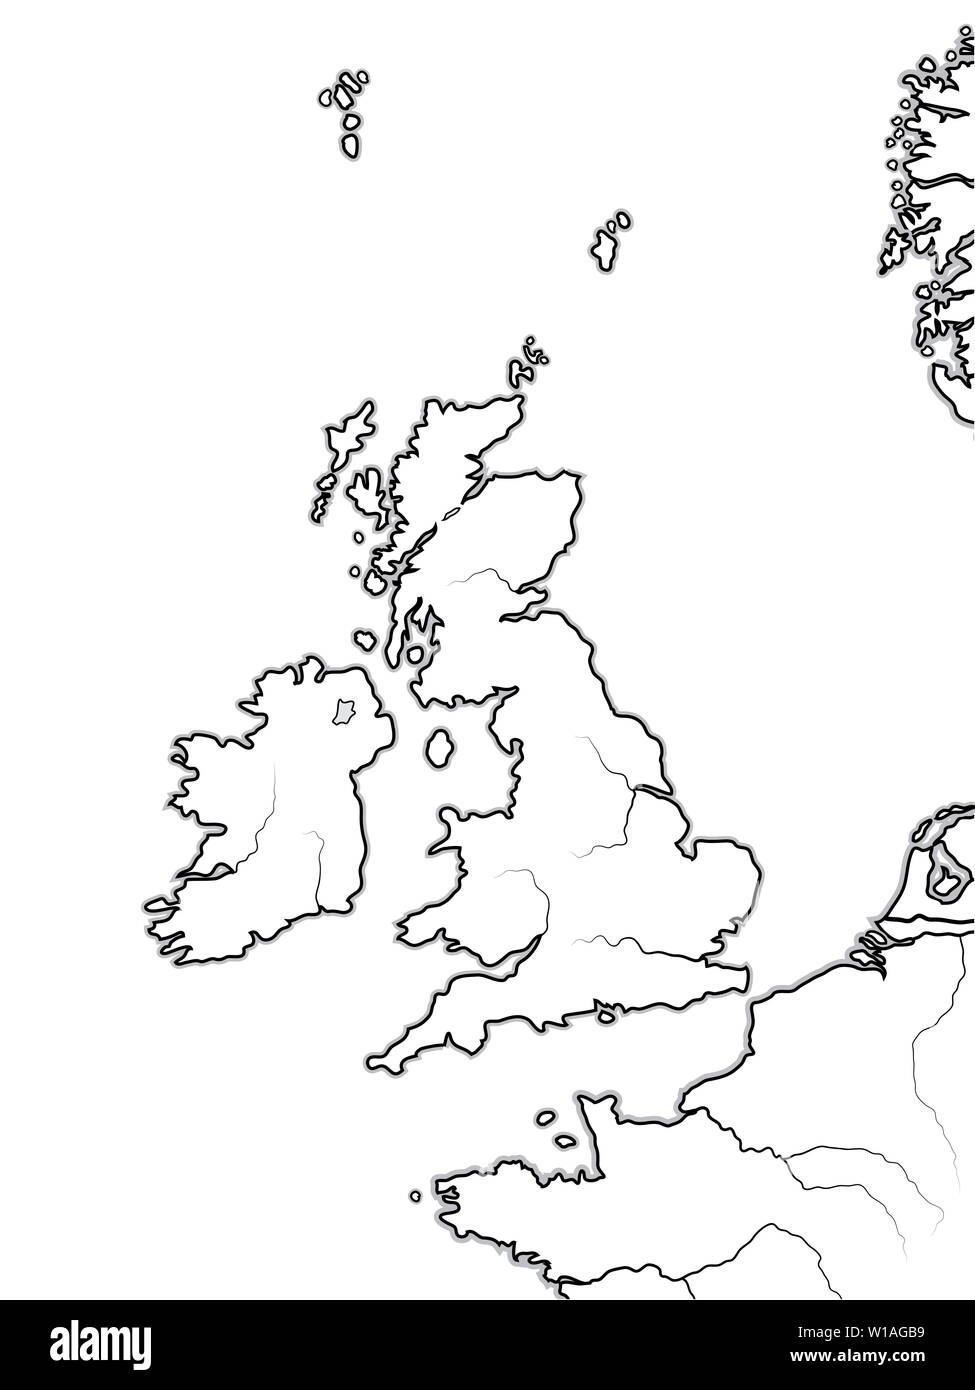 Karte der englischen Land: Großbritannien (Vereinigtes Königreich) - England, Schottland, Wales und Irland. Britische Inseln, der Nordsee, des Ärmelkanals. Stockfoto